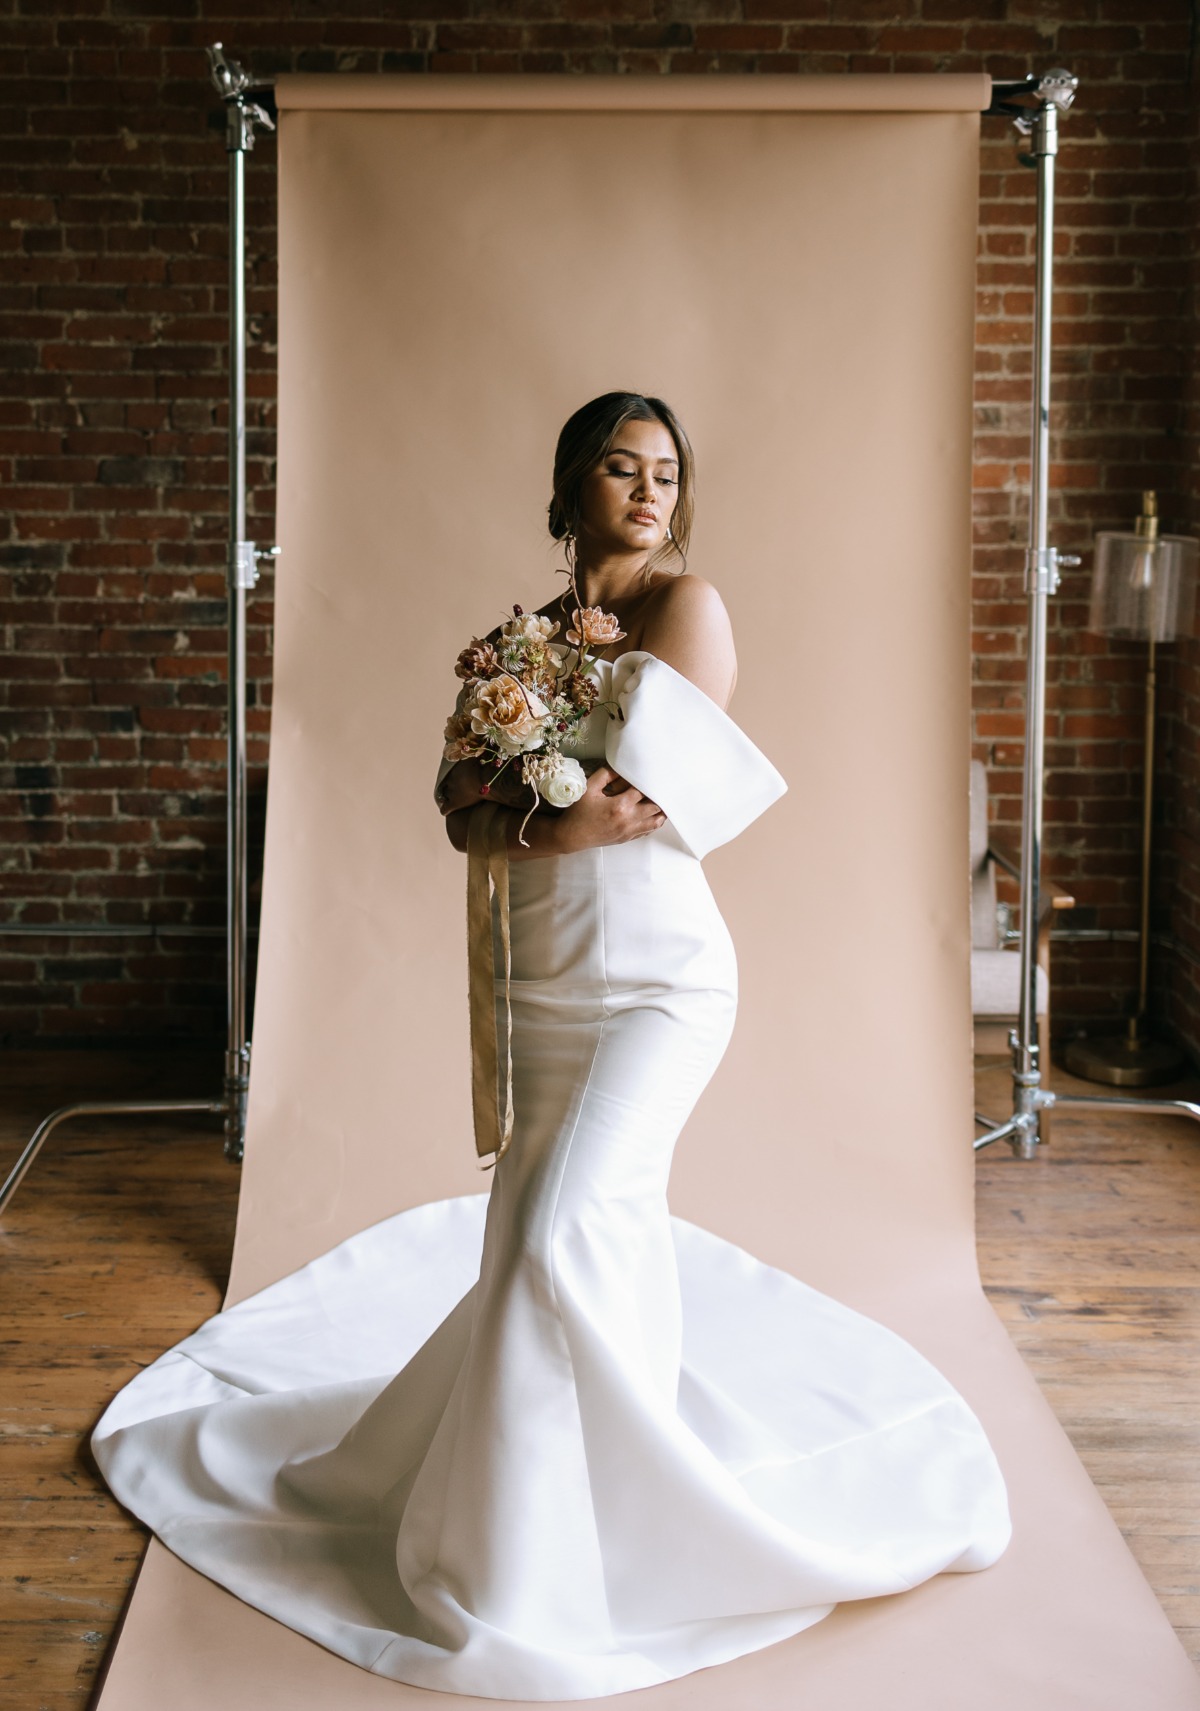 Avant-garde designer wedding gown on chic and modern bride